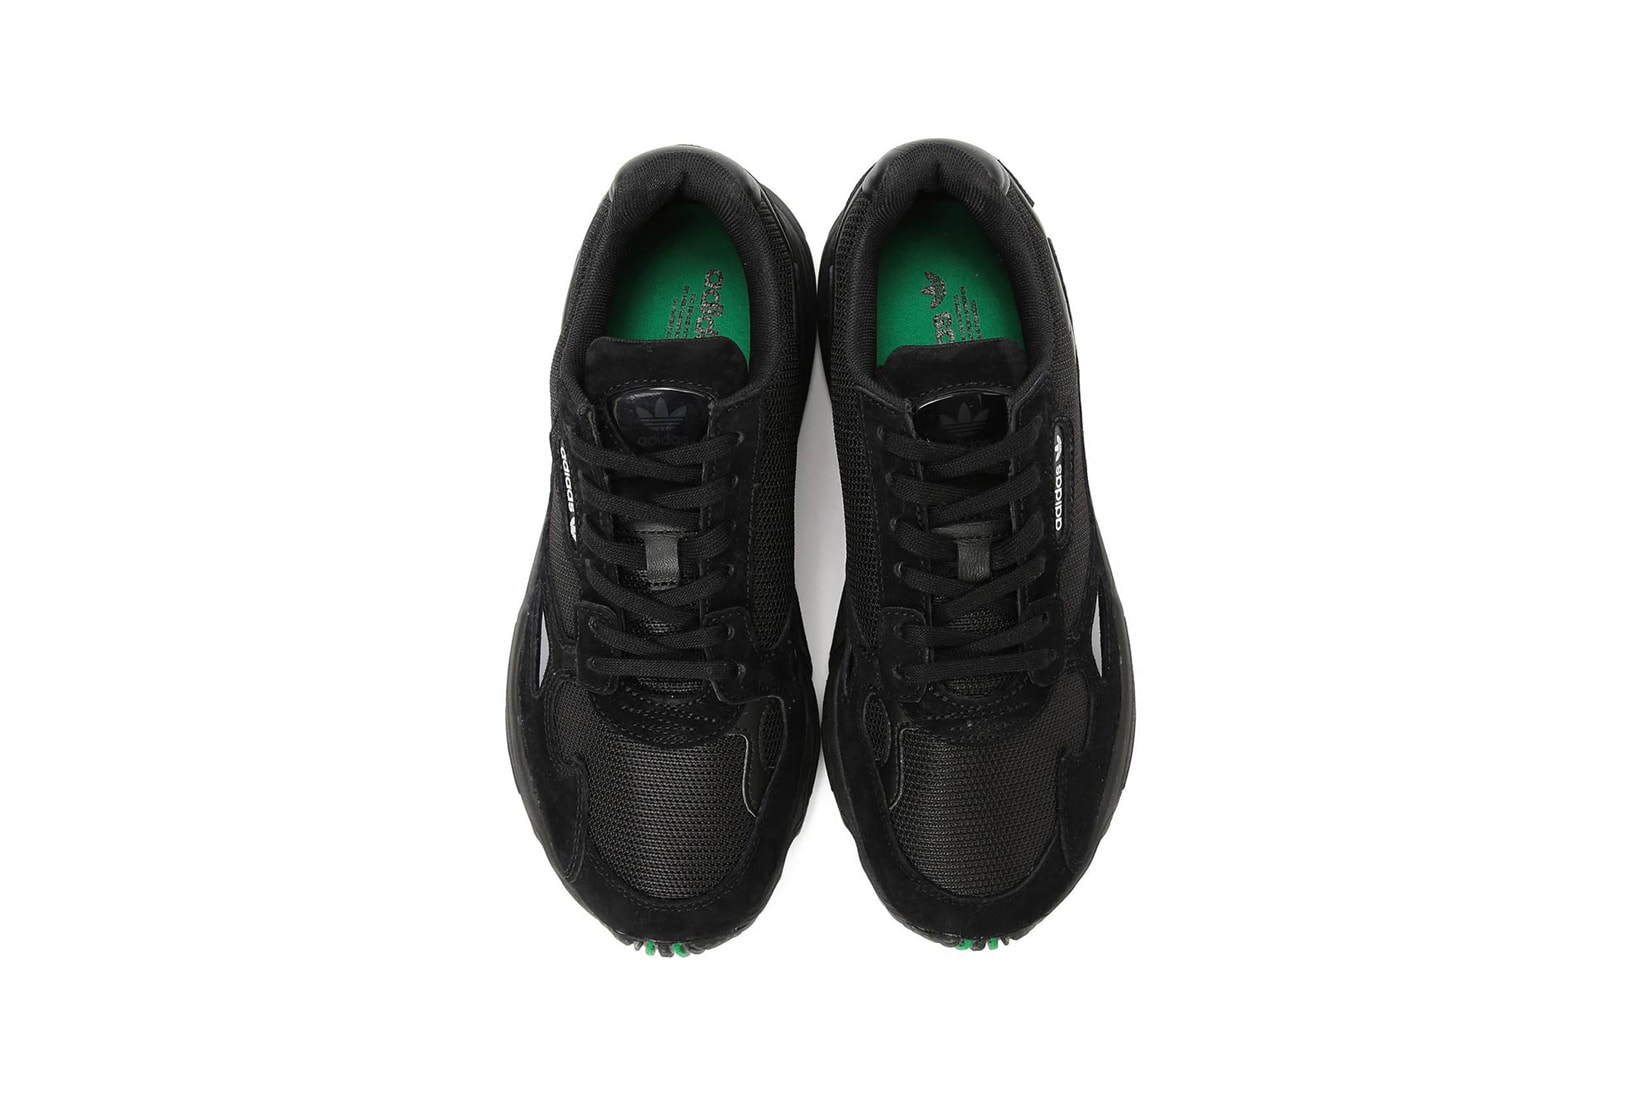 BEAMS adidas Originals Falcon Black Green